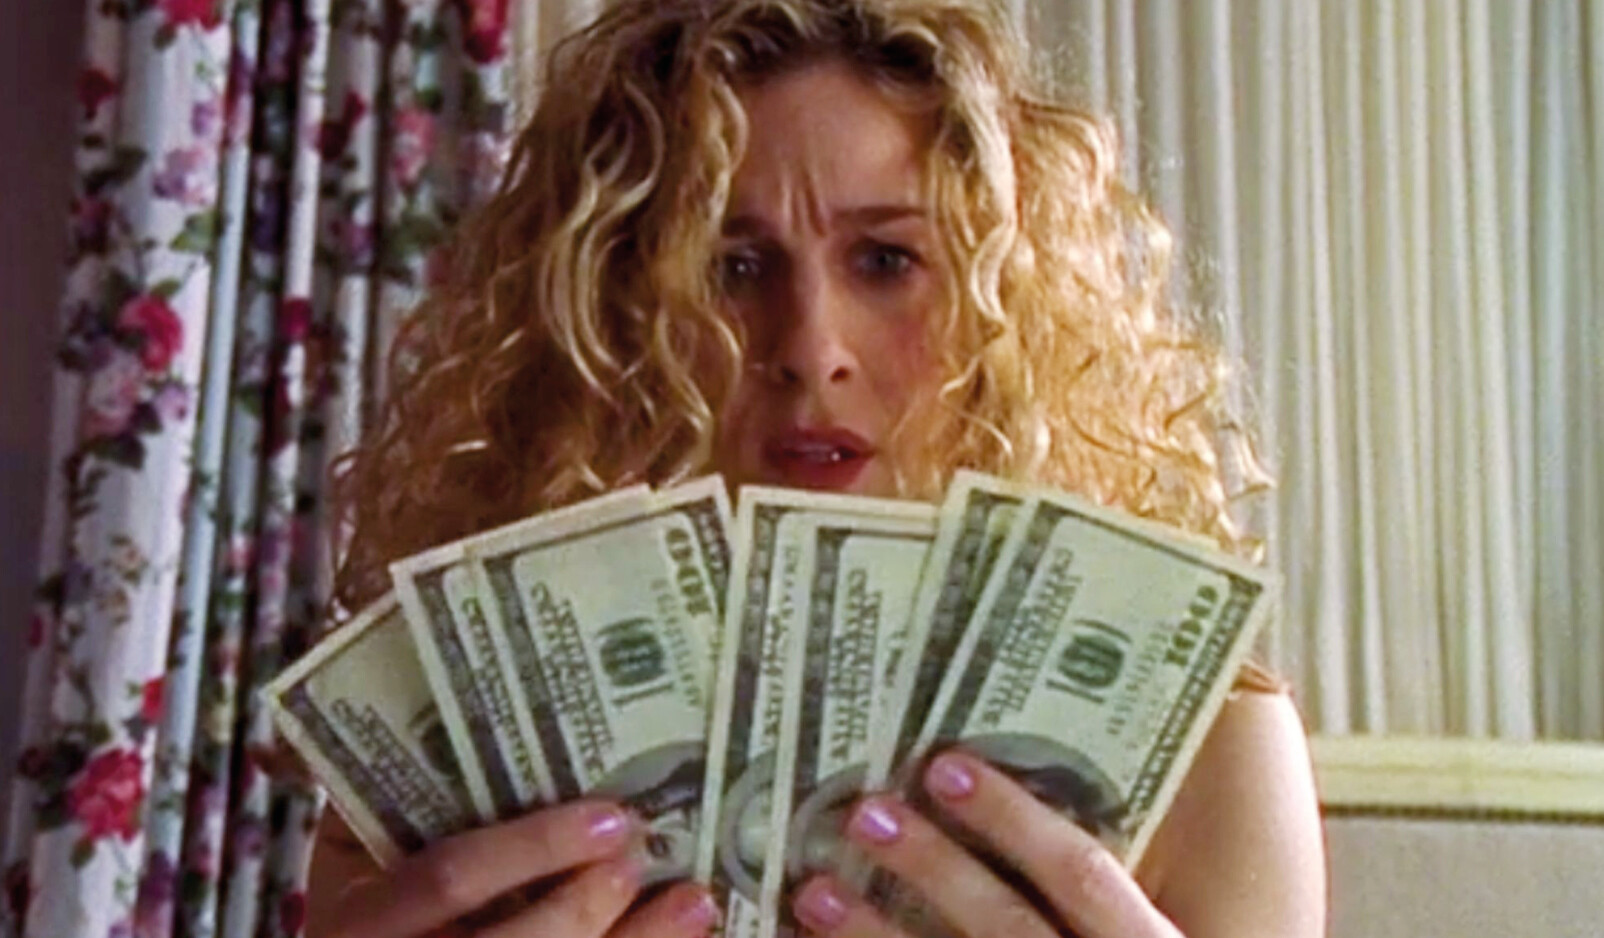 vrouw met heel veel dollars geld in haar handen blond krullend haar